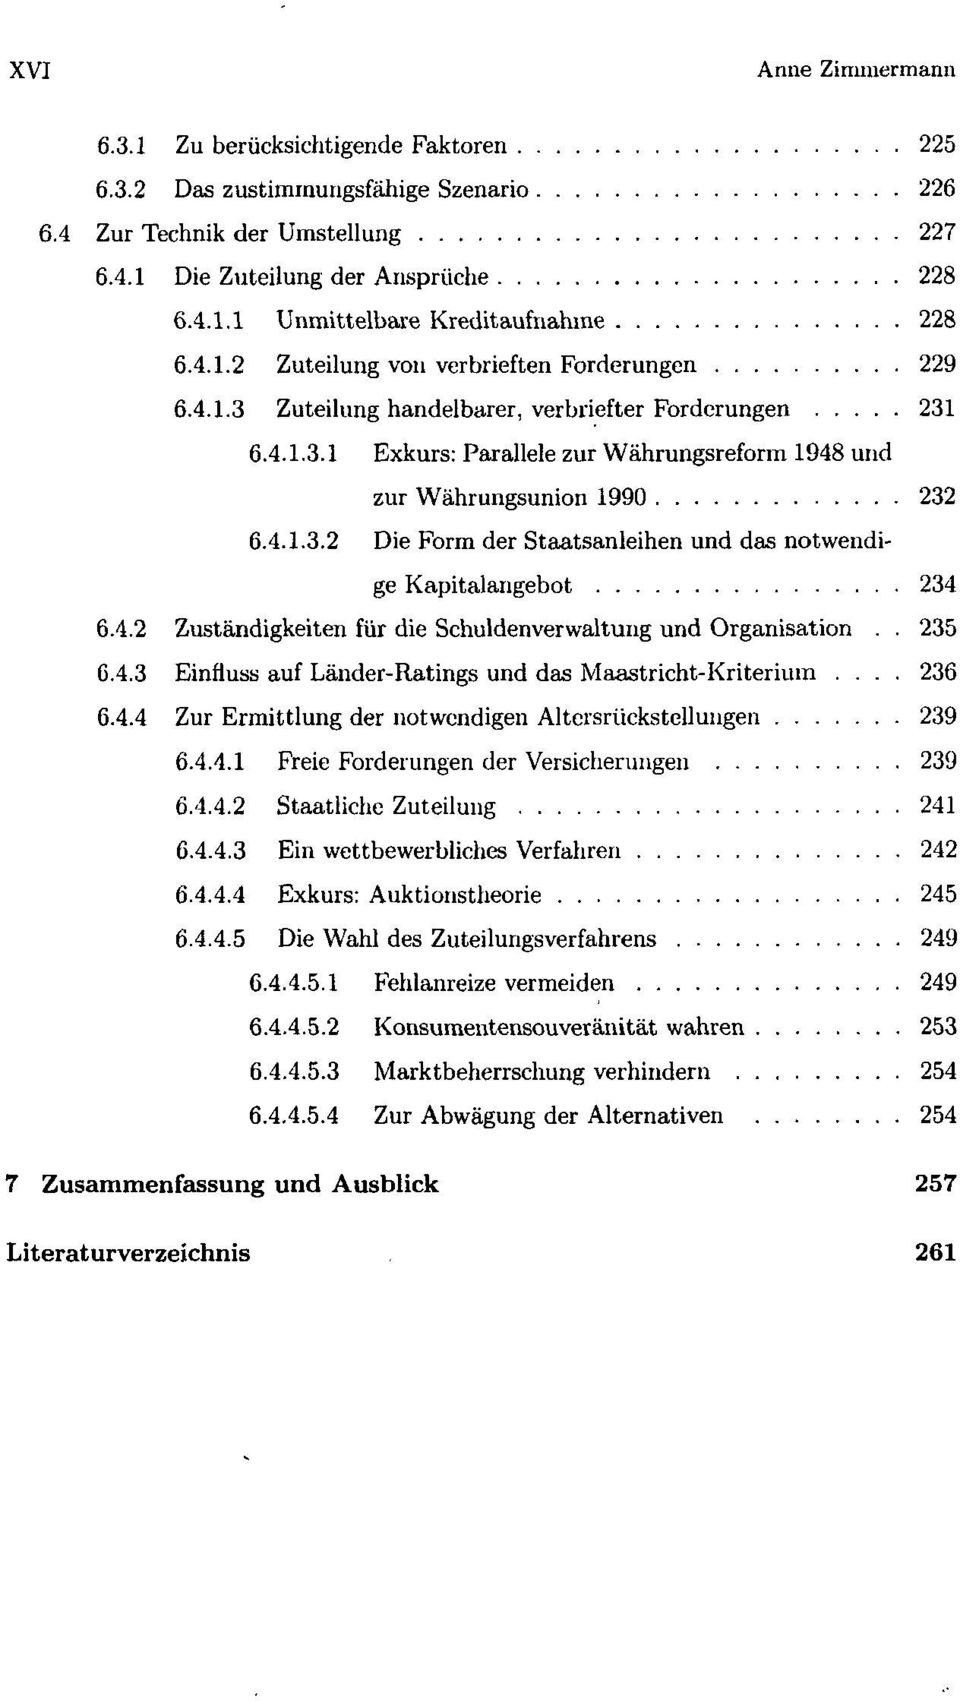 4.2 Zuständigkeiten für die Schuldenverwaltung und Organisation.. 235 6.4.3 Einfluss auf Länder-Ratings und das Maastricht-Kriterium... 236 6.4.4 Zur Ermittlung der notwendigen Altersrückstellungen 239 6.